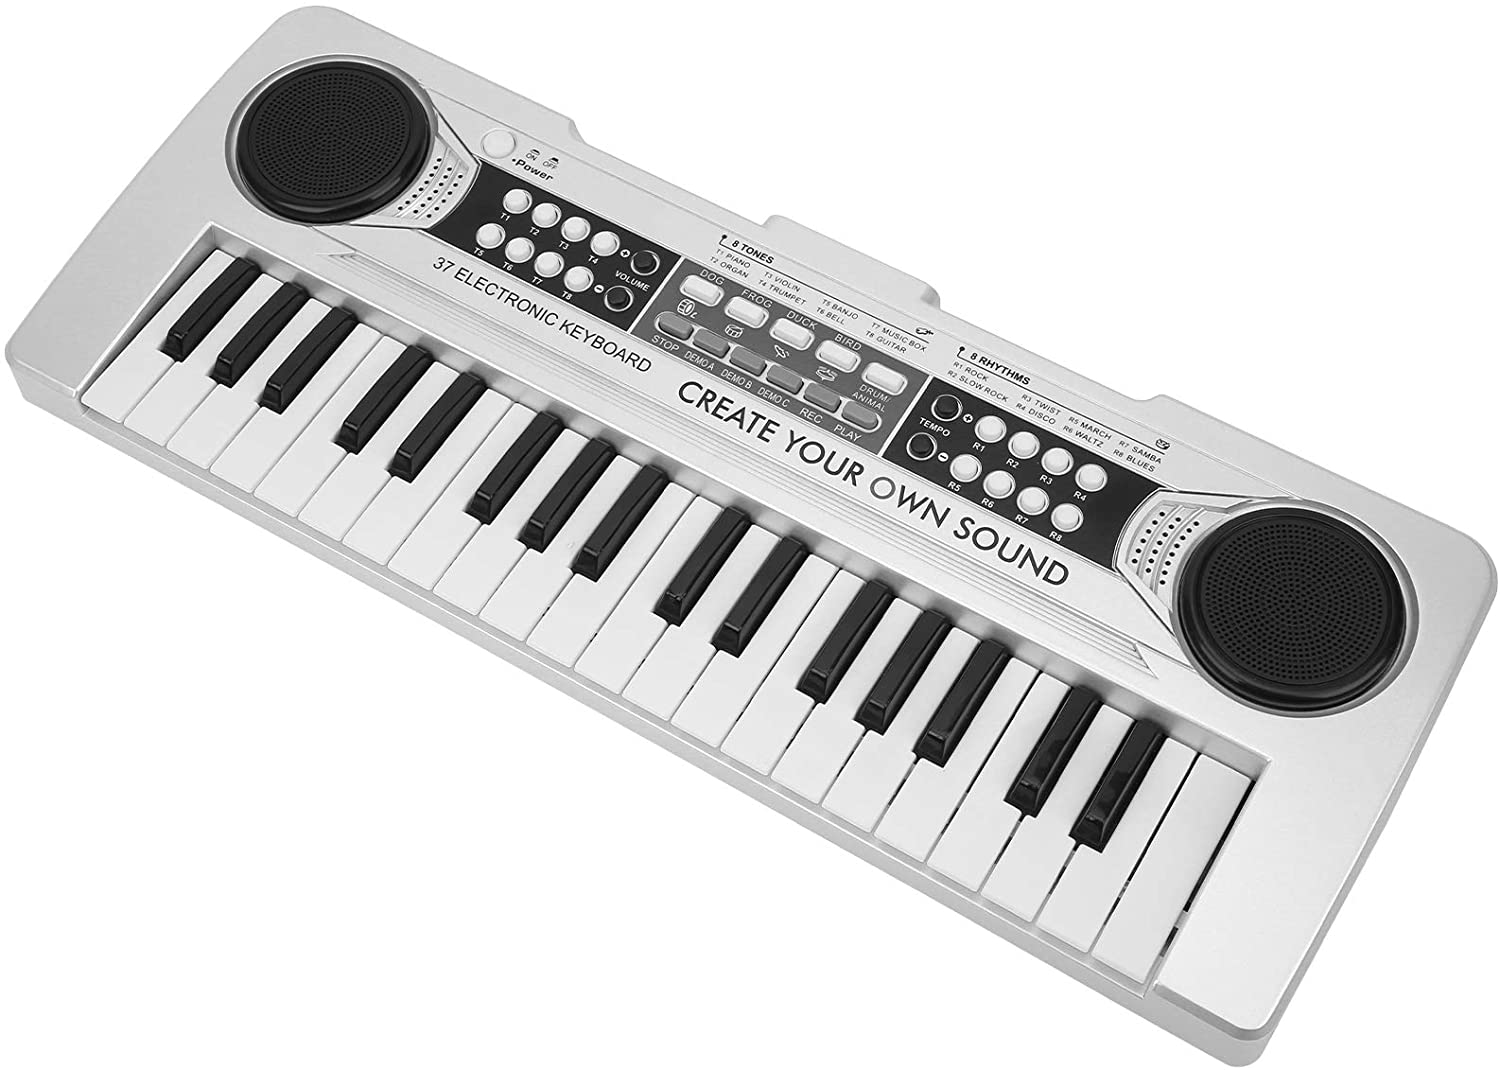 37 Keys Kids Piano Electric Keyboard Starter Music Keyboard Electric Piano Musical Instrument with Microphone(Silver)